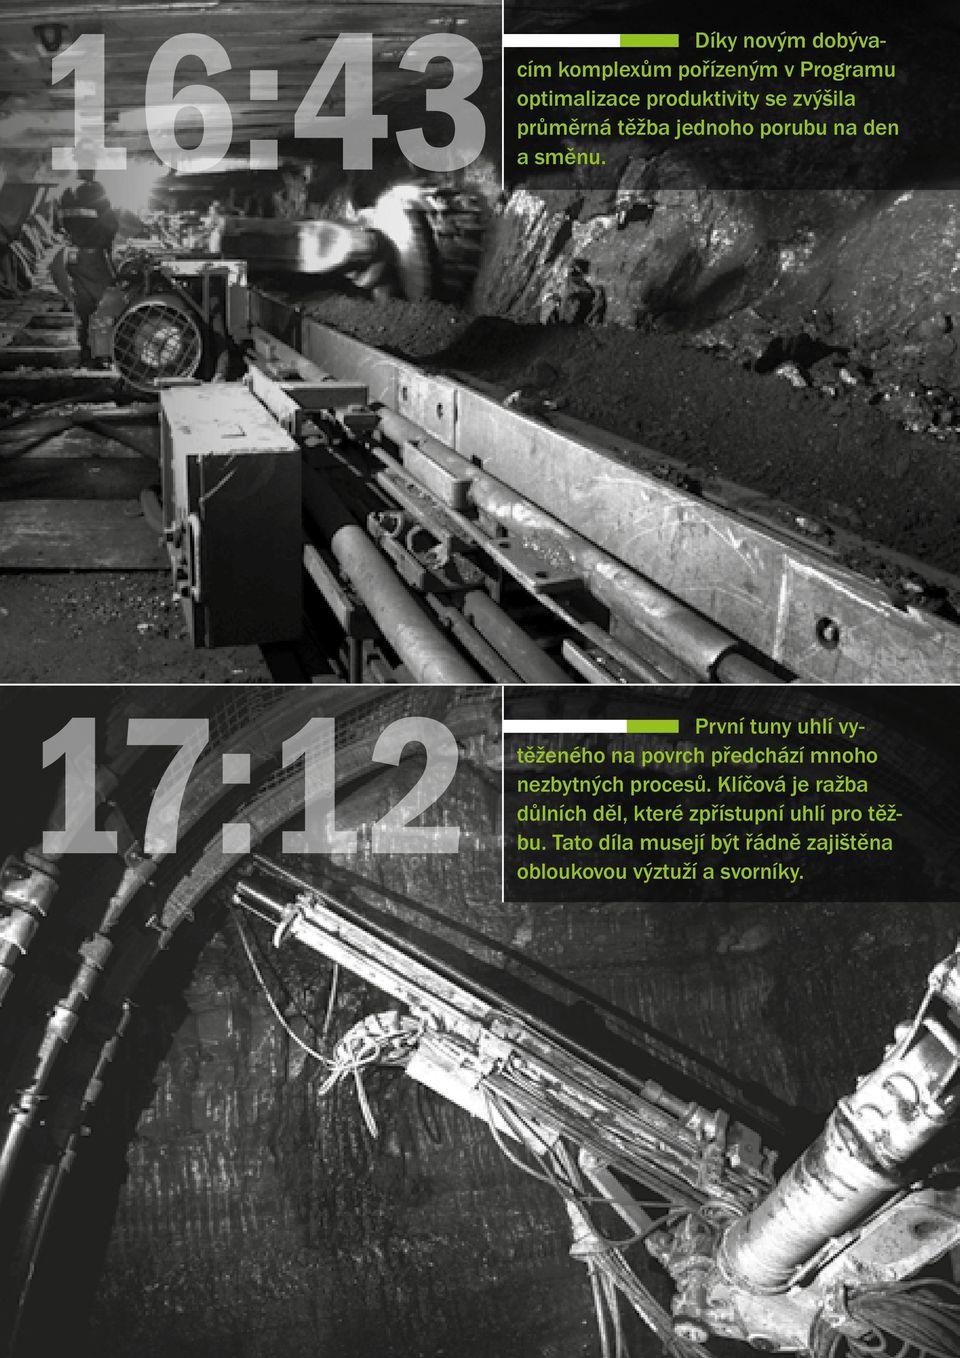 17:12 První tuny uhlí vytěženého na povrch předchází mnoho nezbytných procesů.